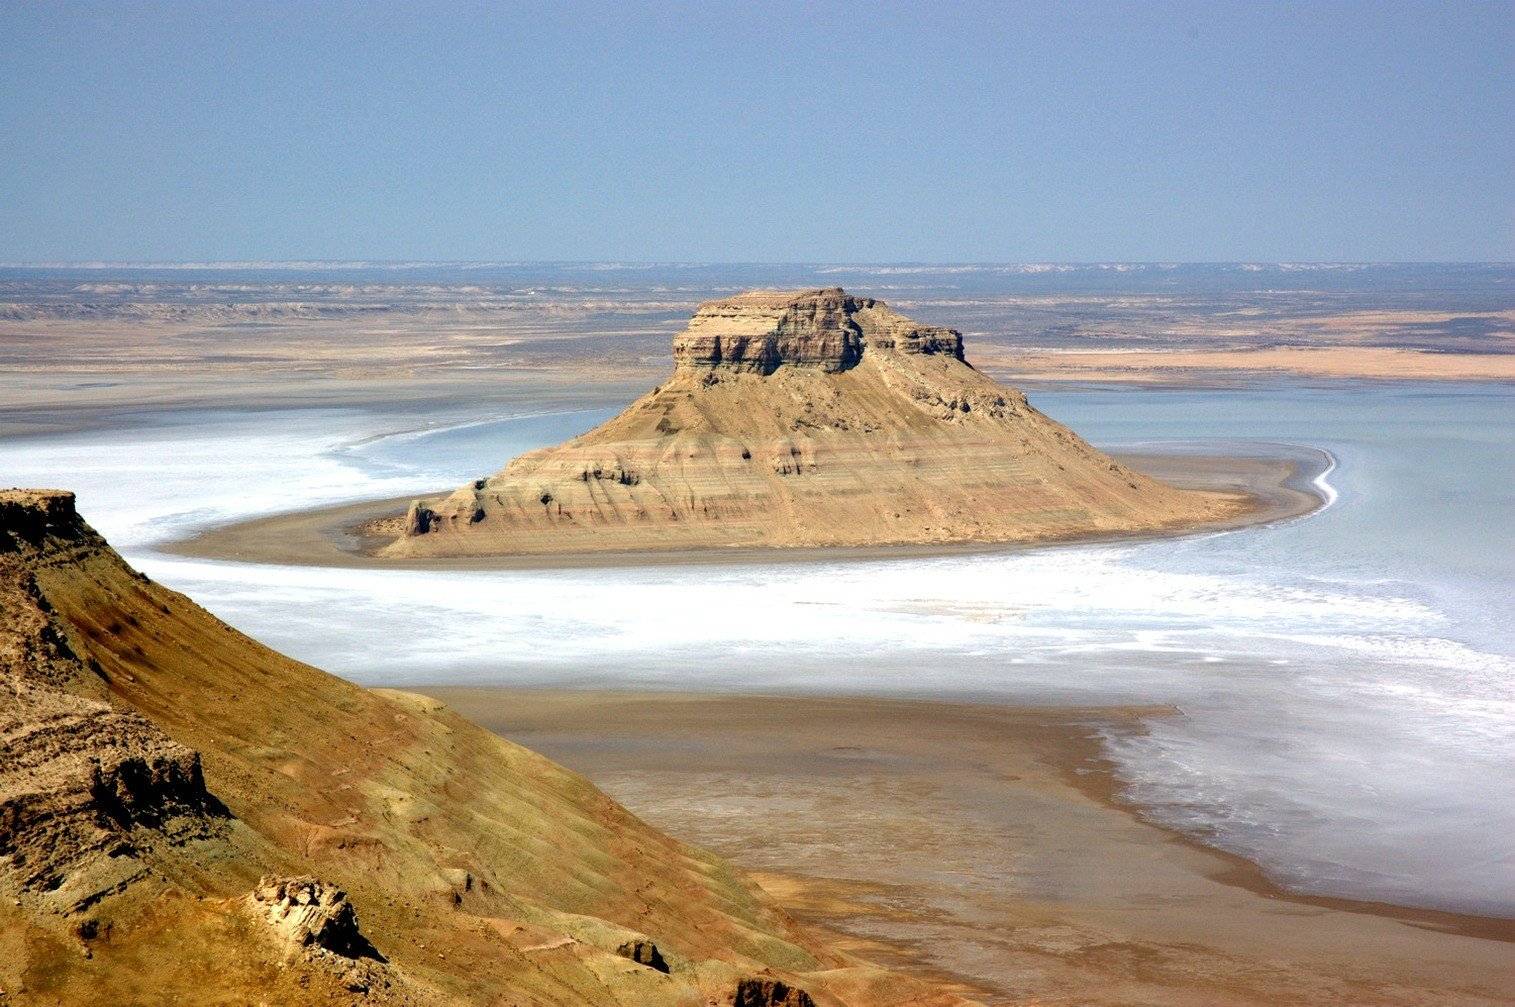 Départ pour la Mer d’Aral!